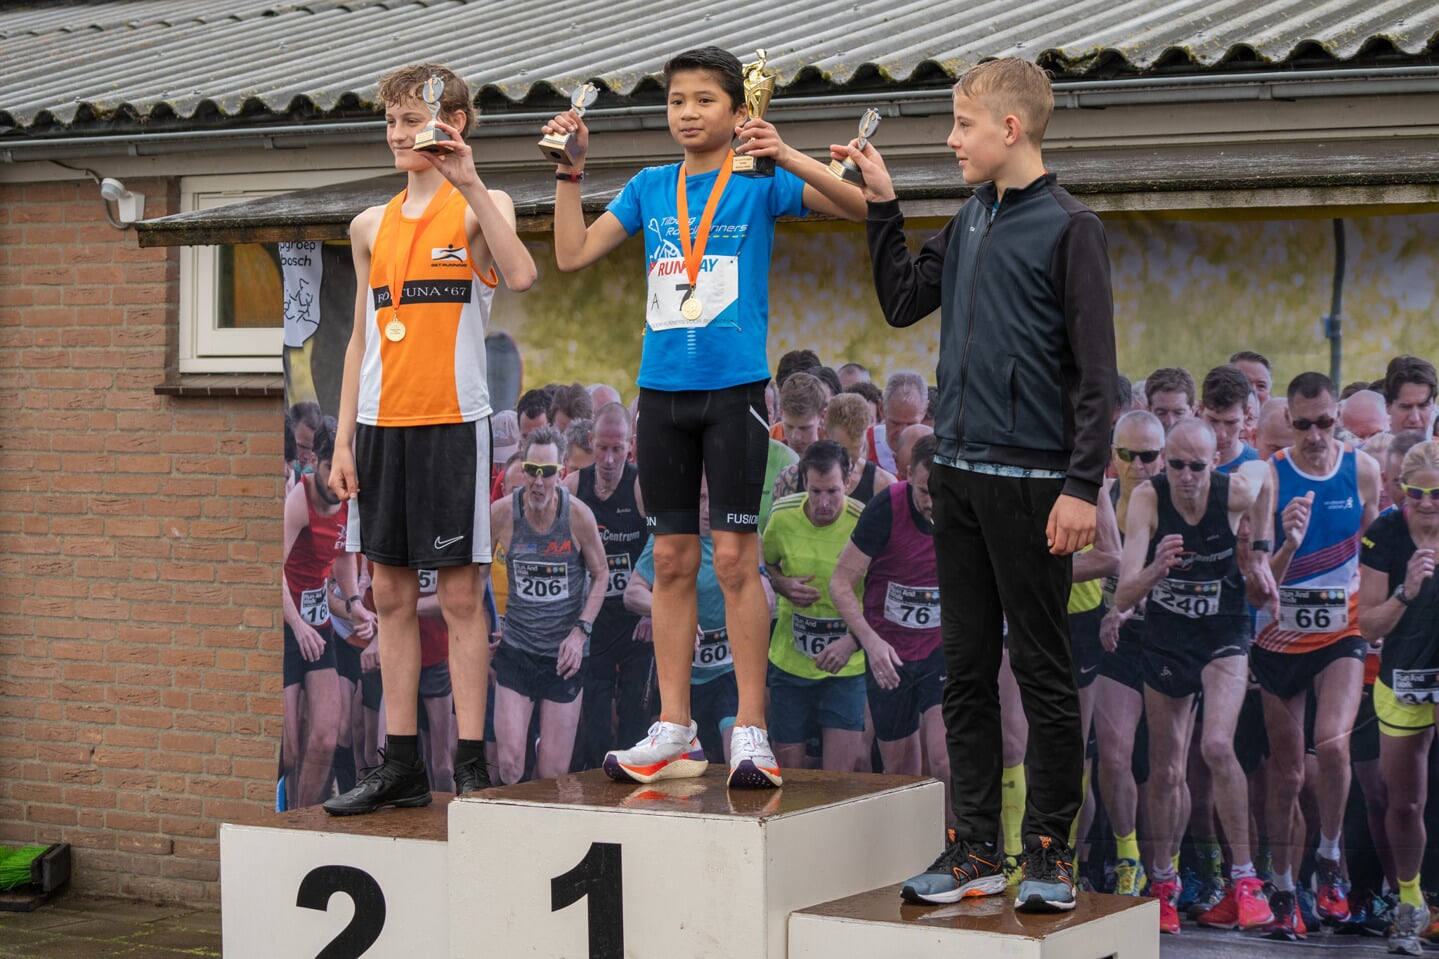 TVE sport Wijboschloop, jeugdloop jongens: 1. Wang, Mark Dave Apalla 08:14, 2. Quinten Dekkers 08:29, 3. Robbin Zandbergen 09:1